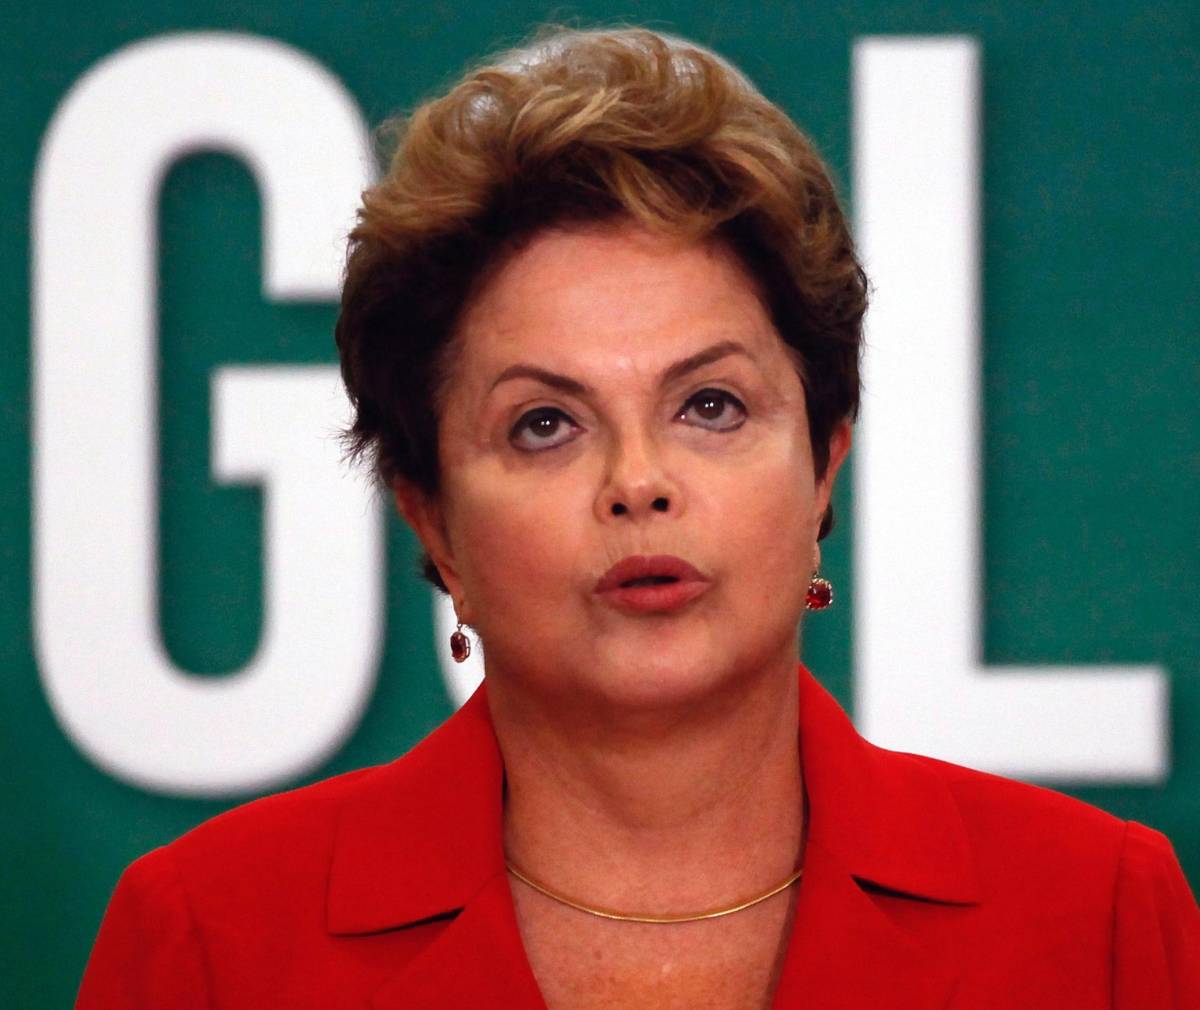 Bingo e finanziamenti illegali della campagna elettorale di Dilma Rousseff